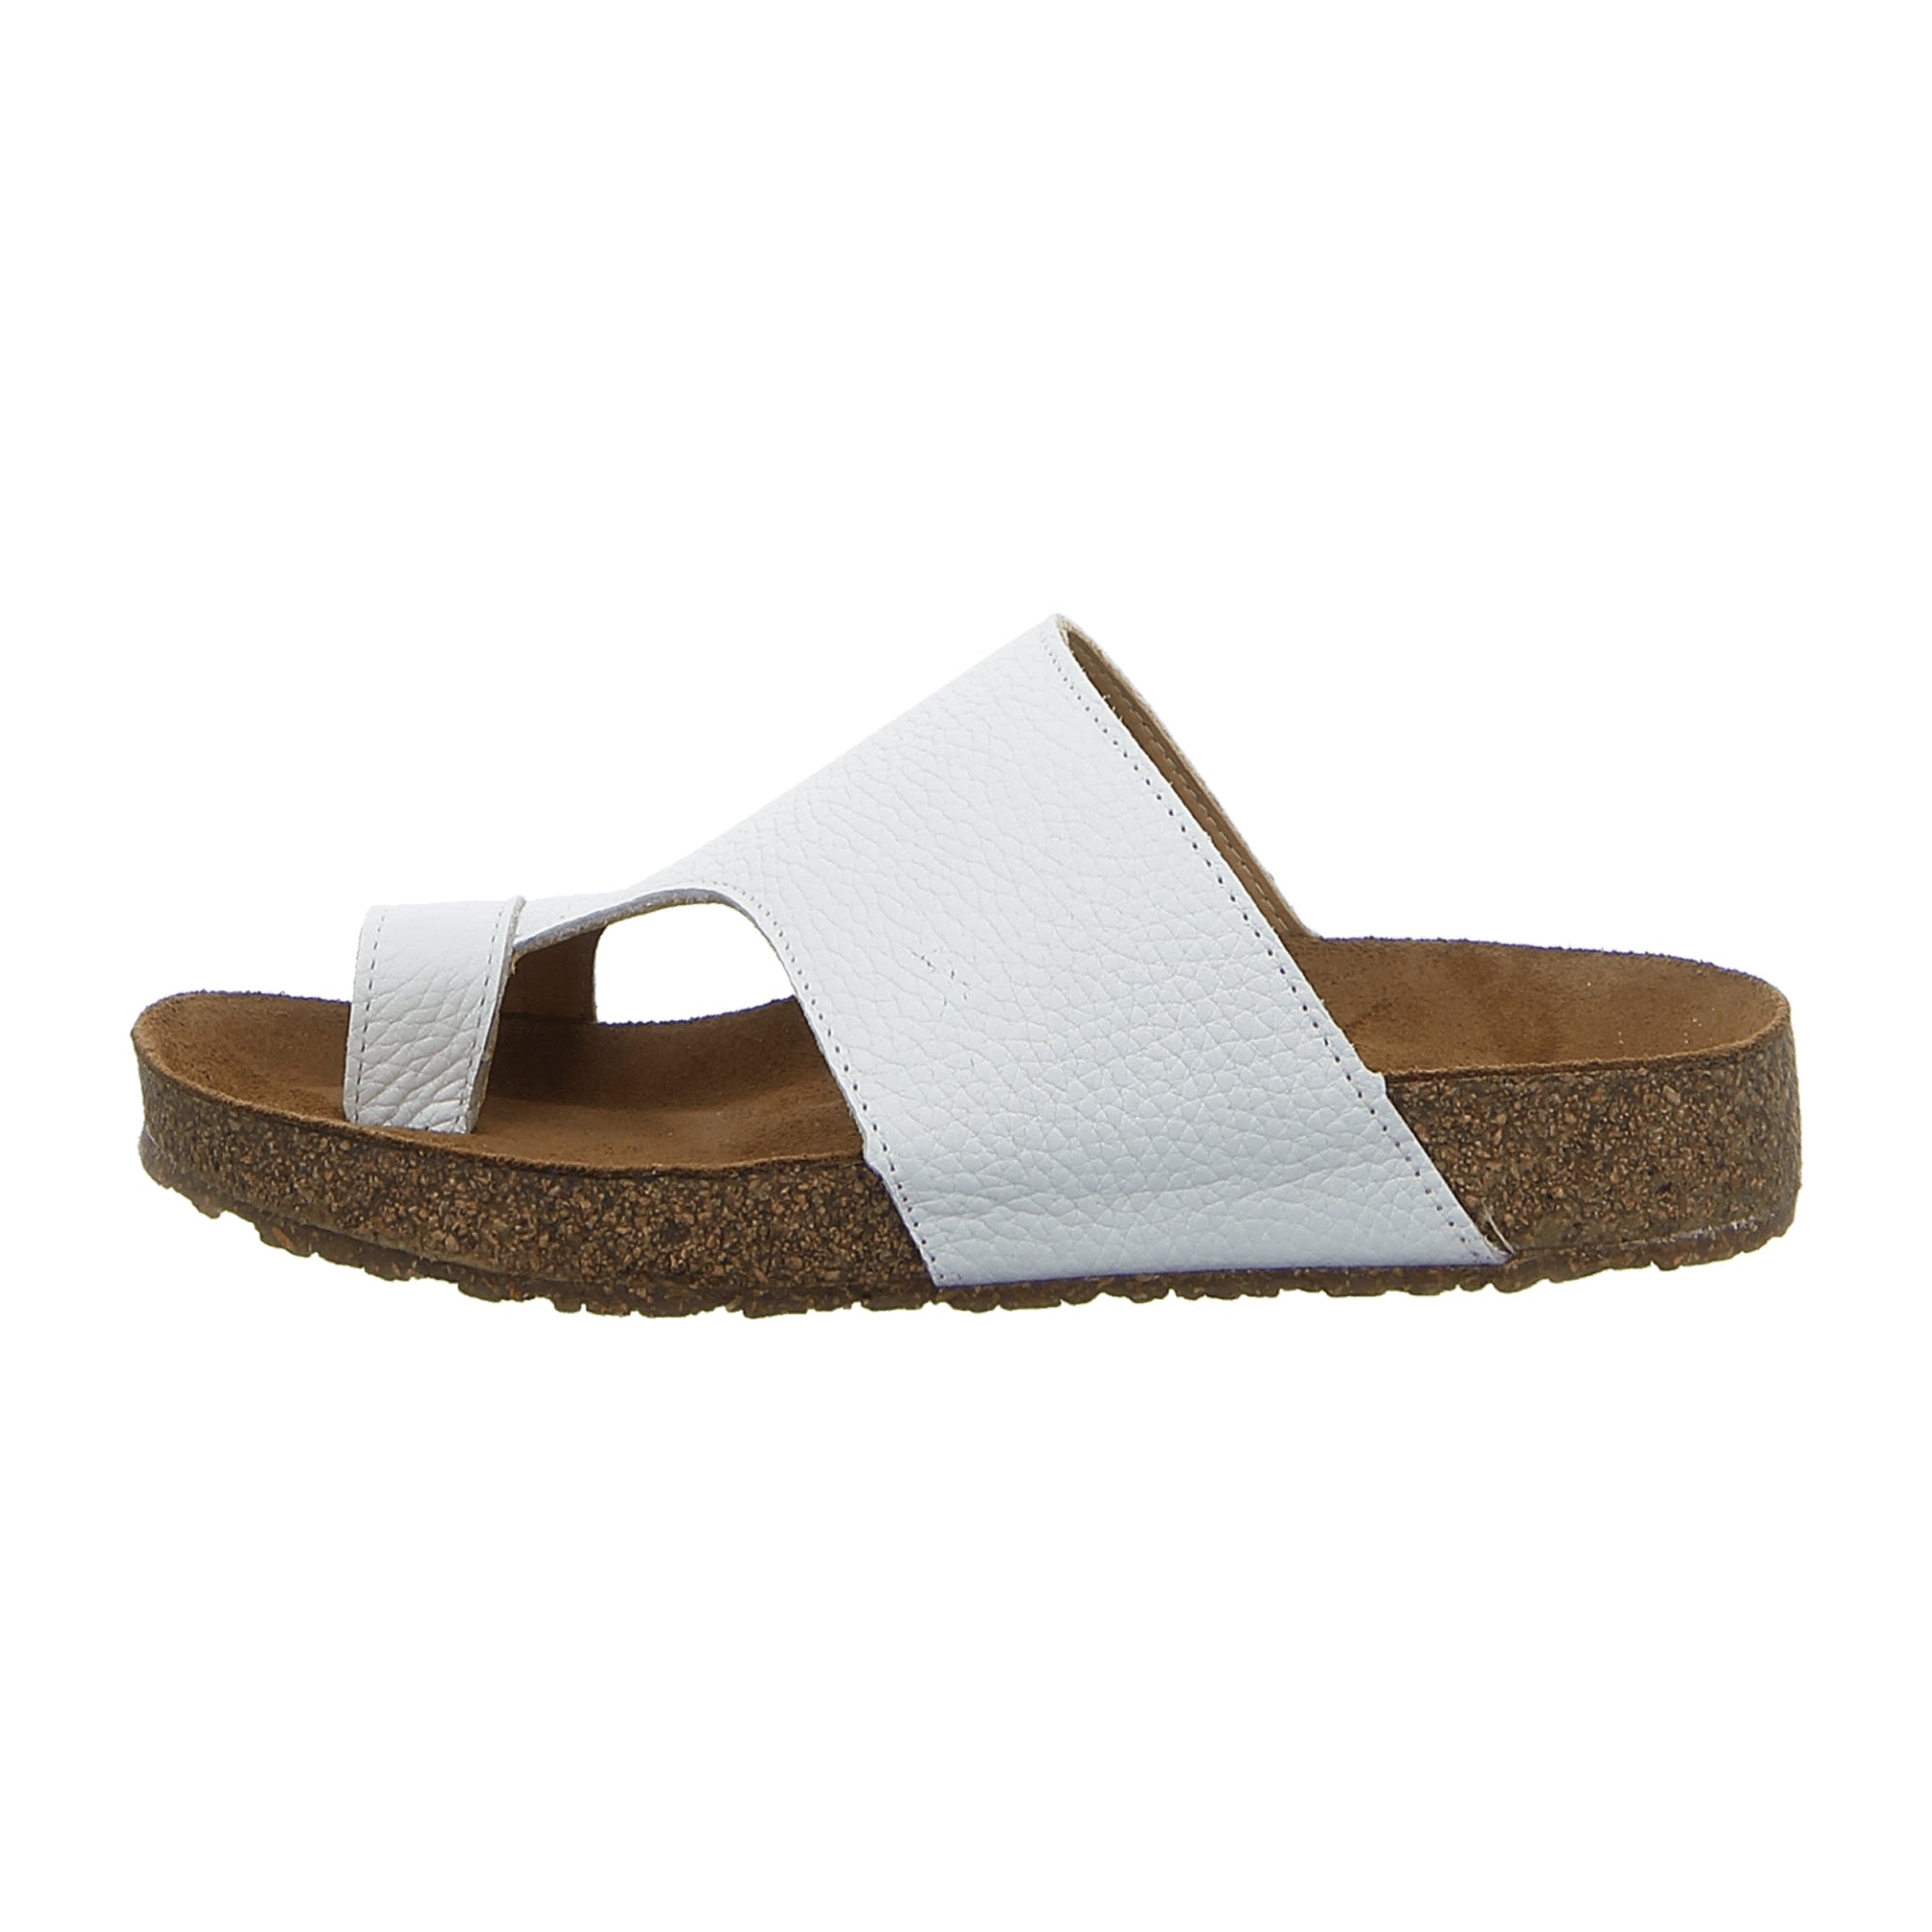 Haflinger Bio Anka Women's White Sandals - Eco-Friendly, Stylish Comfort